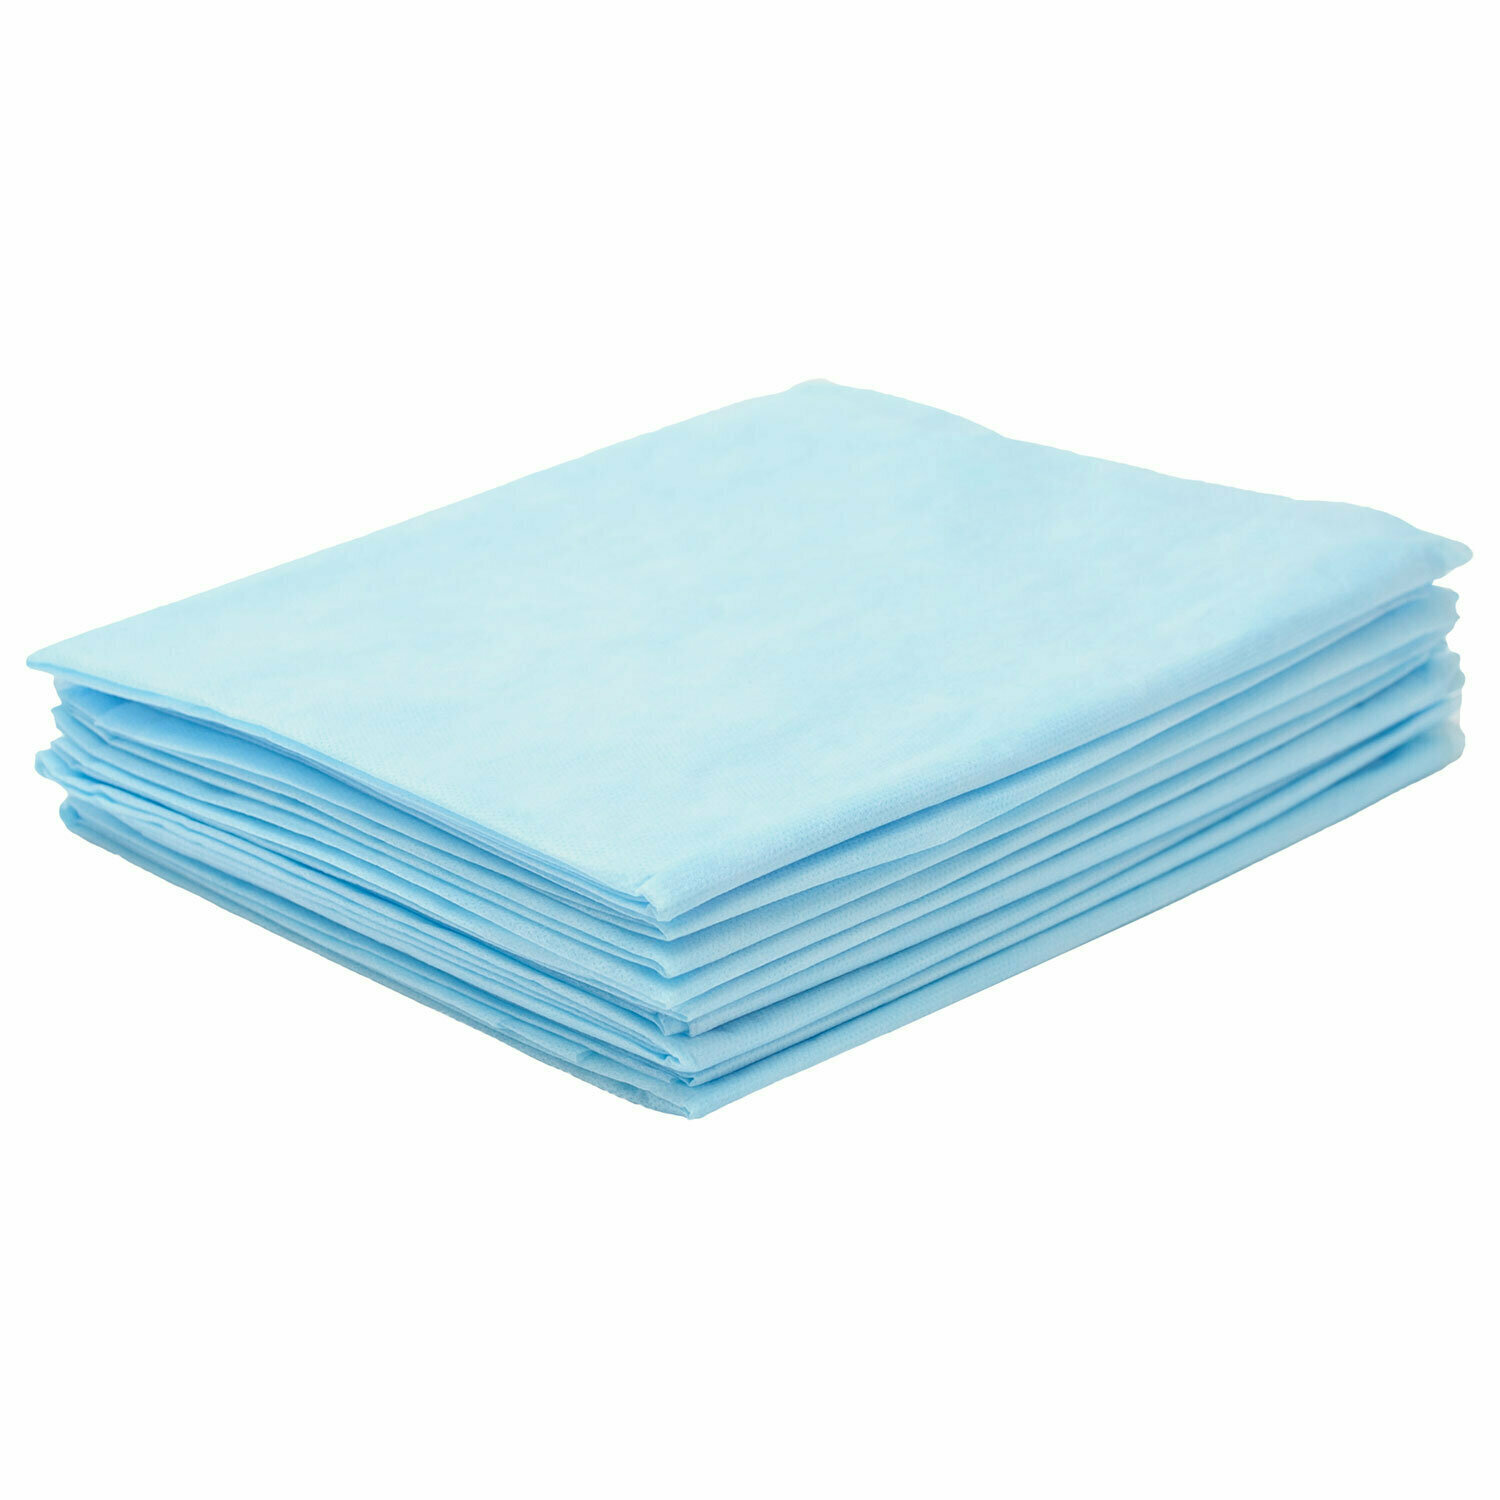 Простыни одноразовые гекса 630119 80х200 см спанбонд 25 г/м2 голубые комплект 2 упаковки по 10 шт.